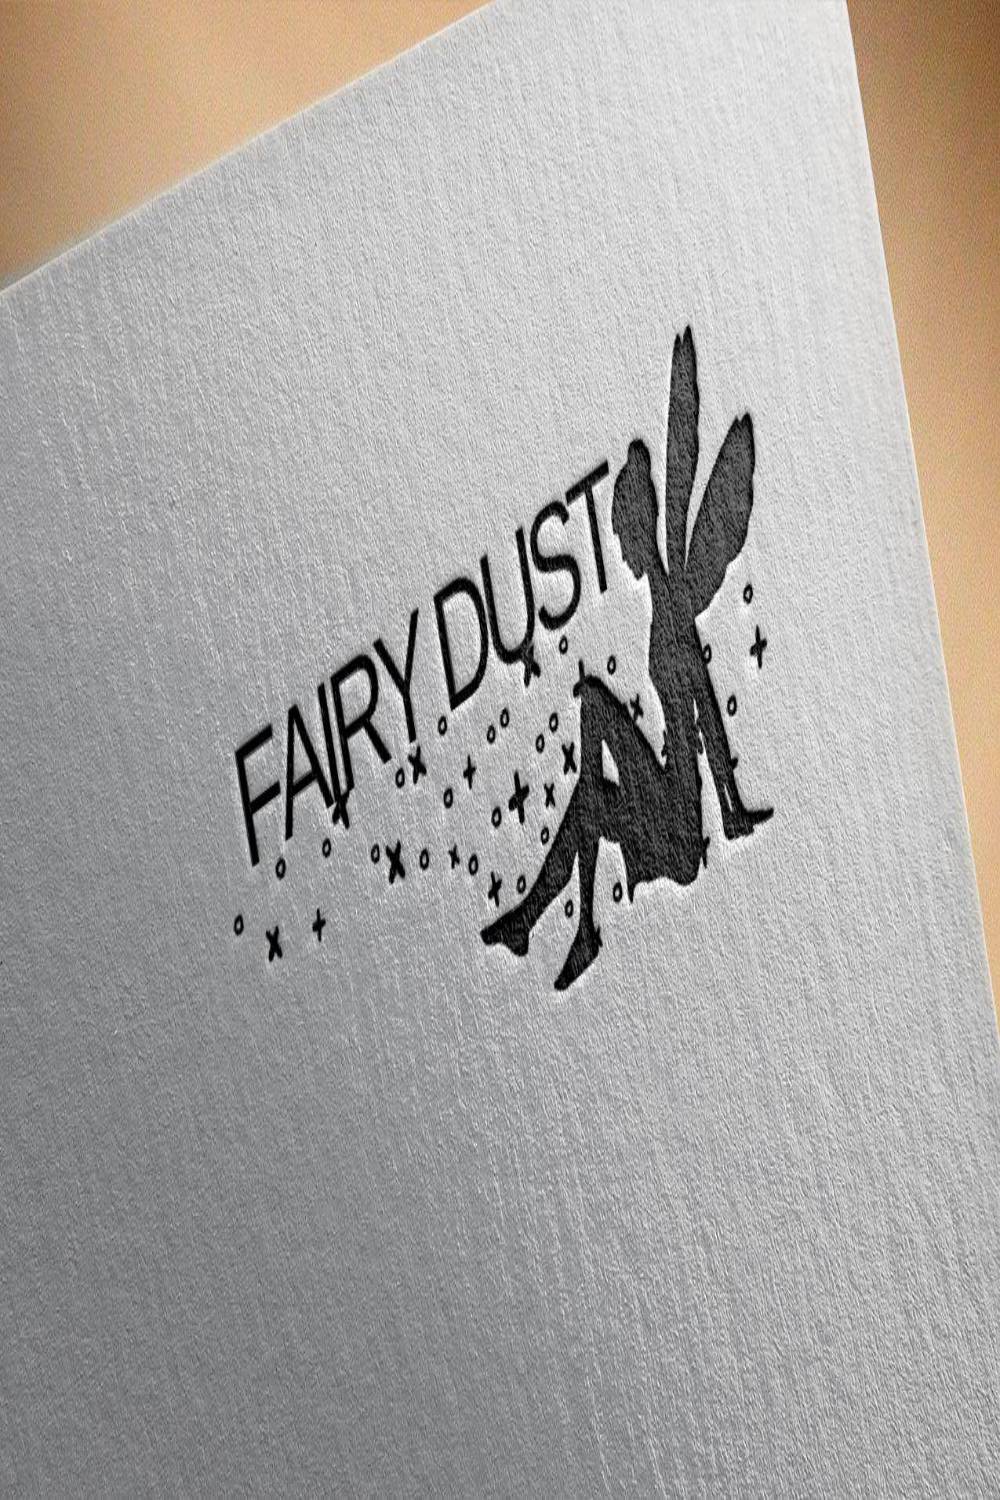 Fairy Dust Beauty Shop Logo Design pinterest image.